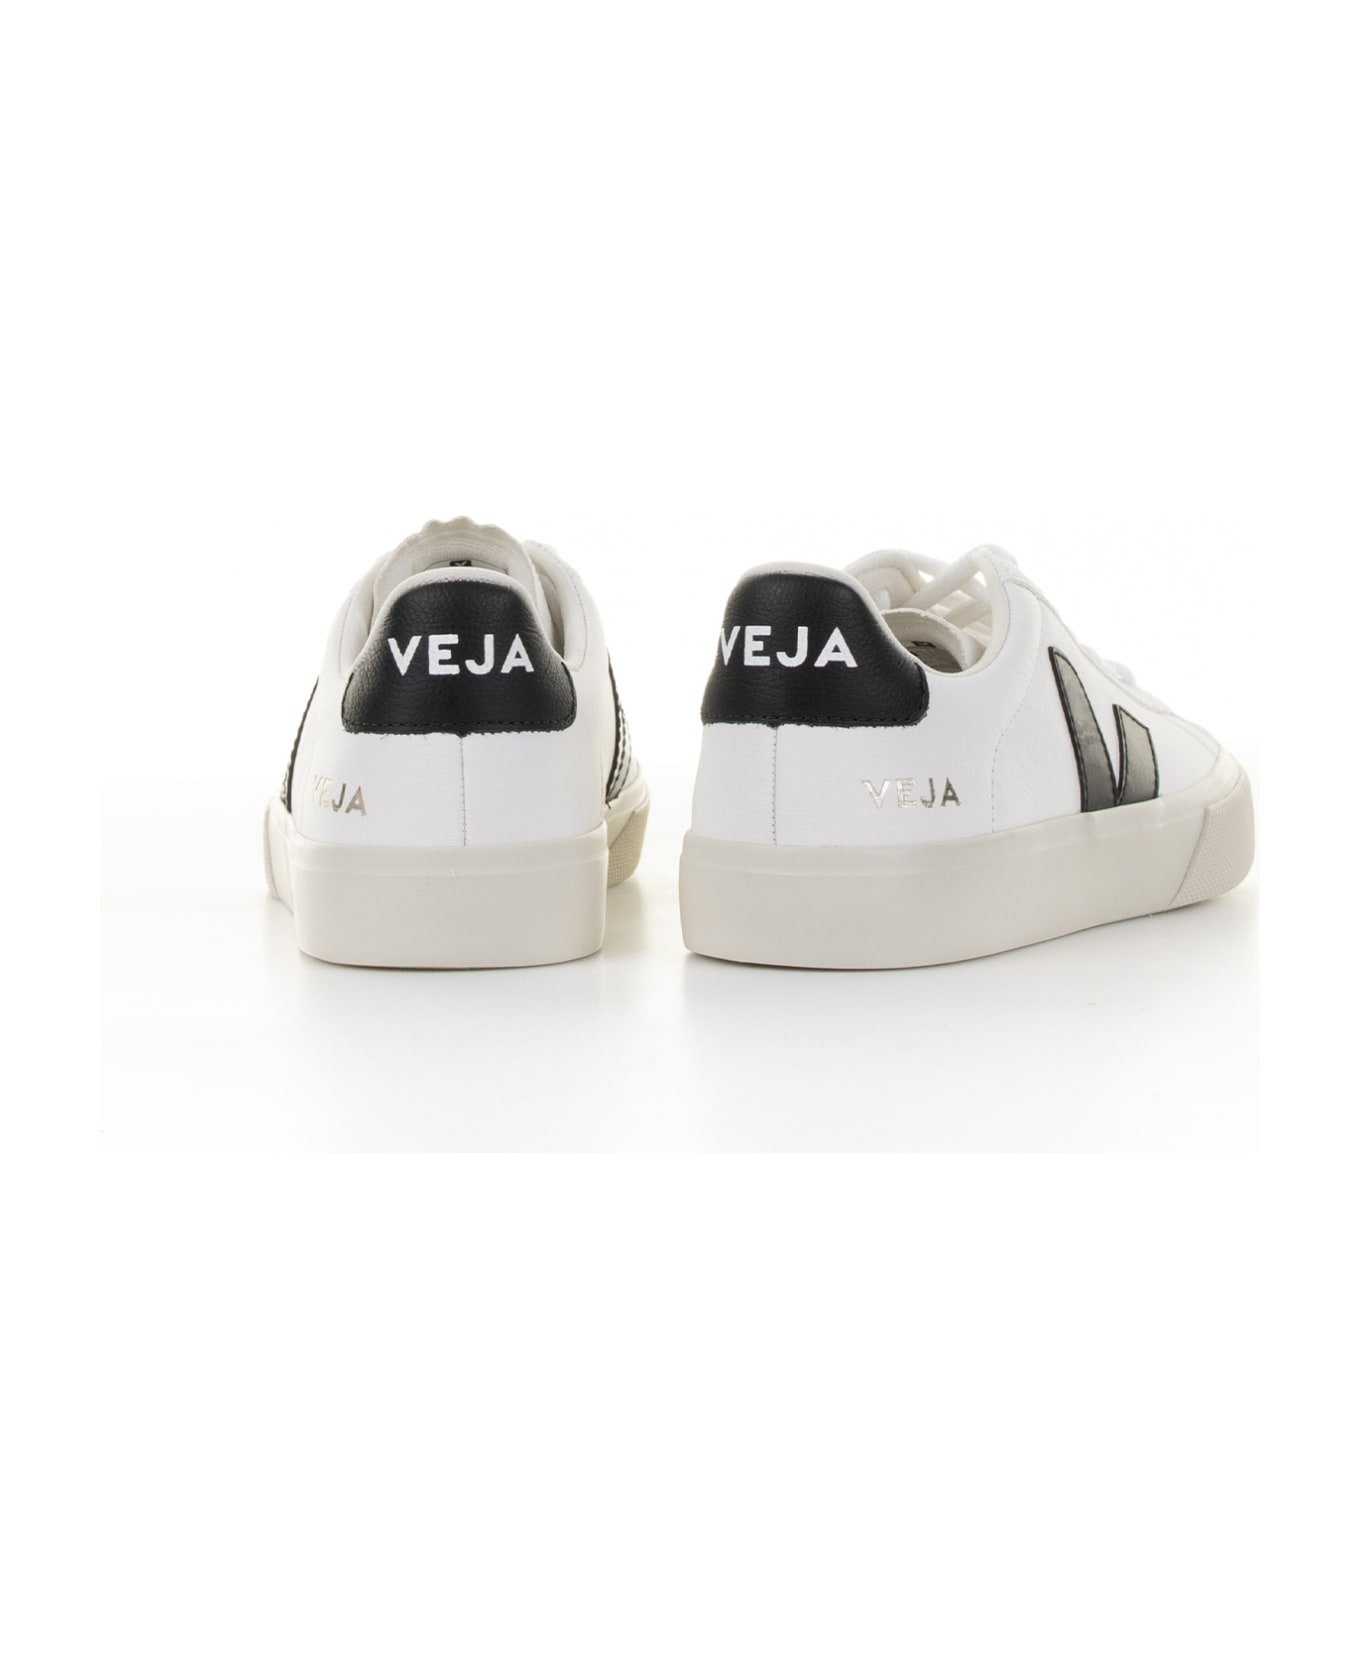 Veja Campo Sneaker In White Black Leather For Women スニーカー